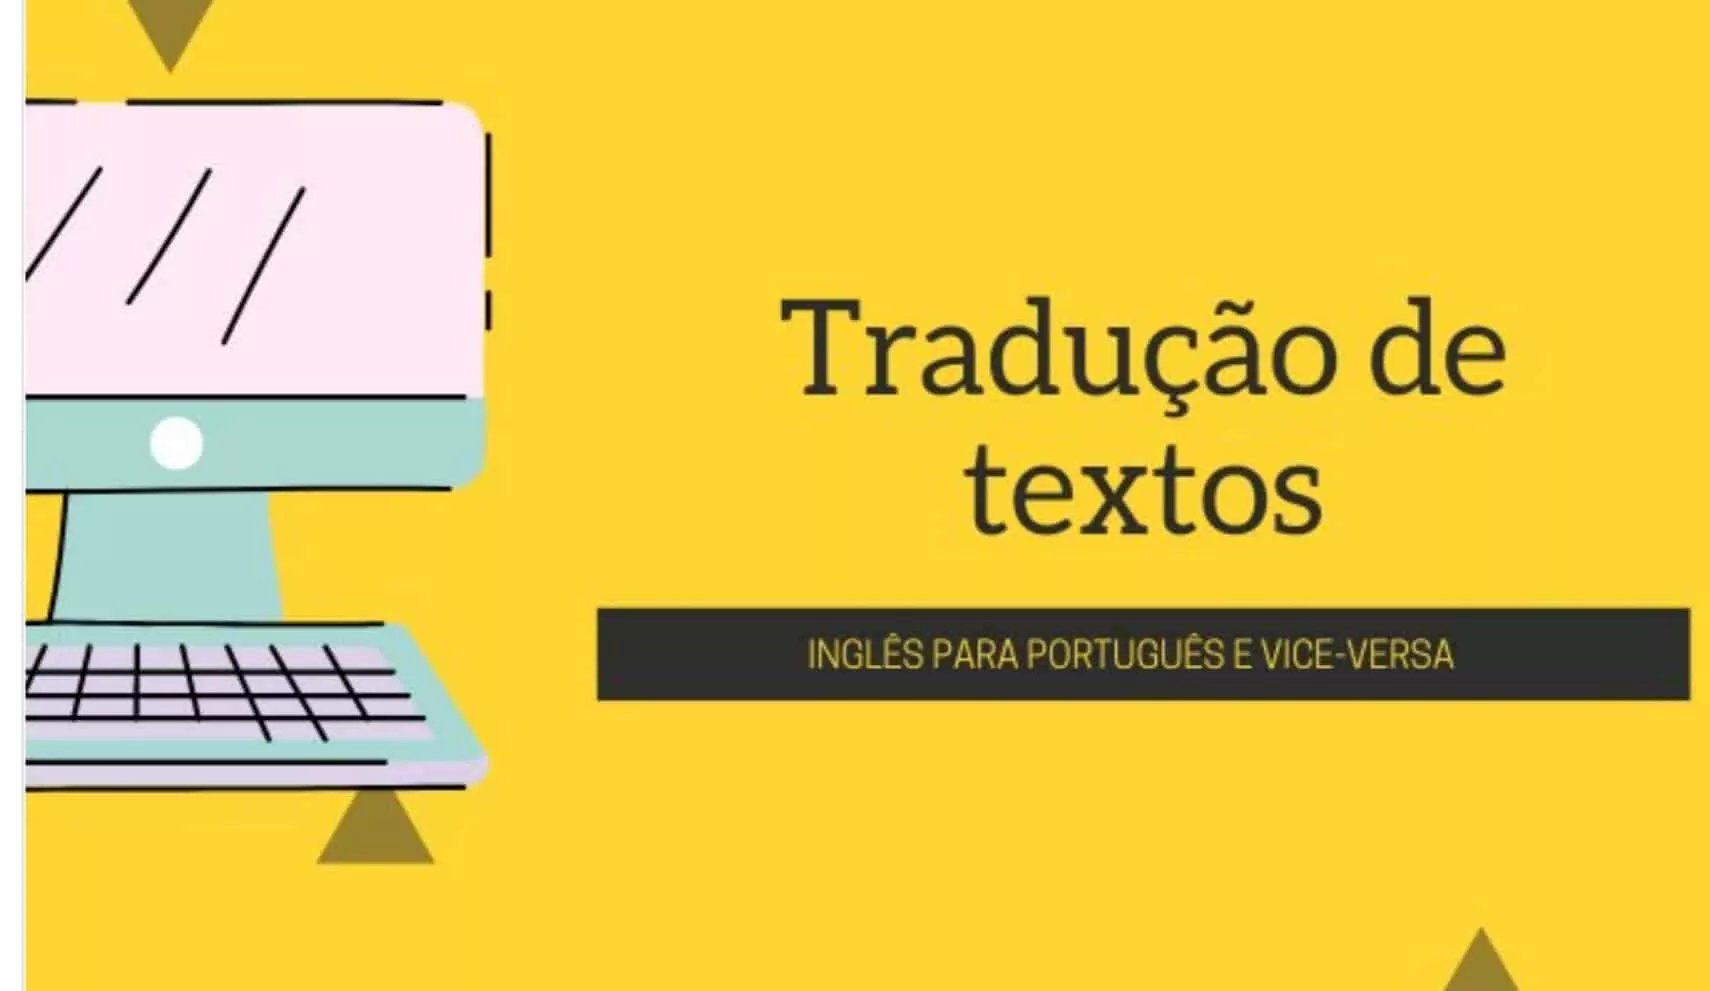 121357Eu vou traduzir qualquer texto que você queira para português ou vice e versa ✅